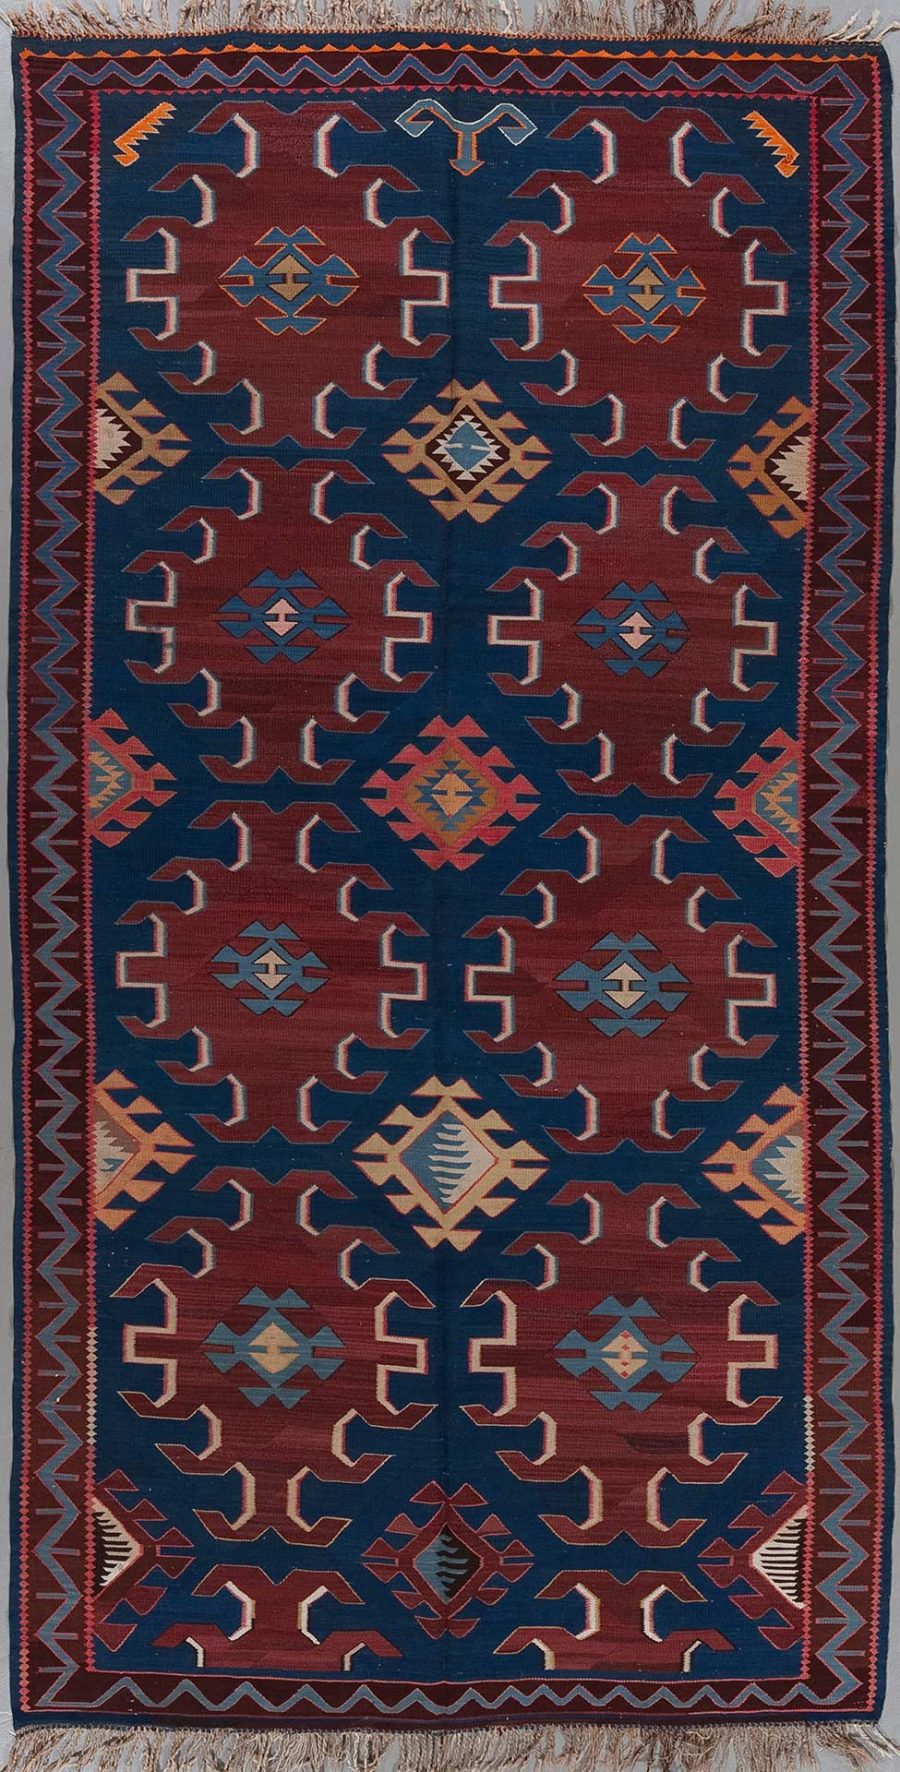 Handgeknüpfter Teppich mit traditionellem geometrischem Muster in Farbtönen von Blau, Rot, Beige und Orange, umgeben von dekorativen Bordüren und Fransen an beiden Enden.